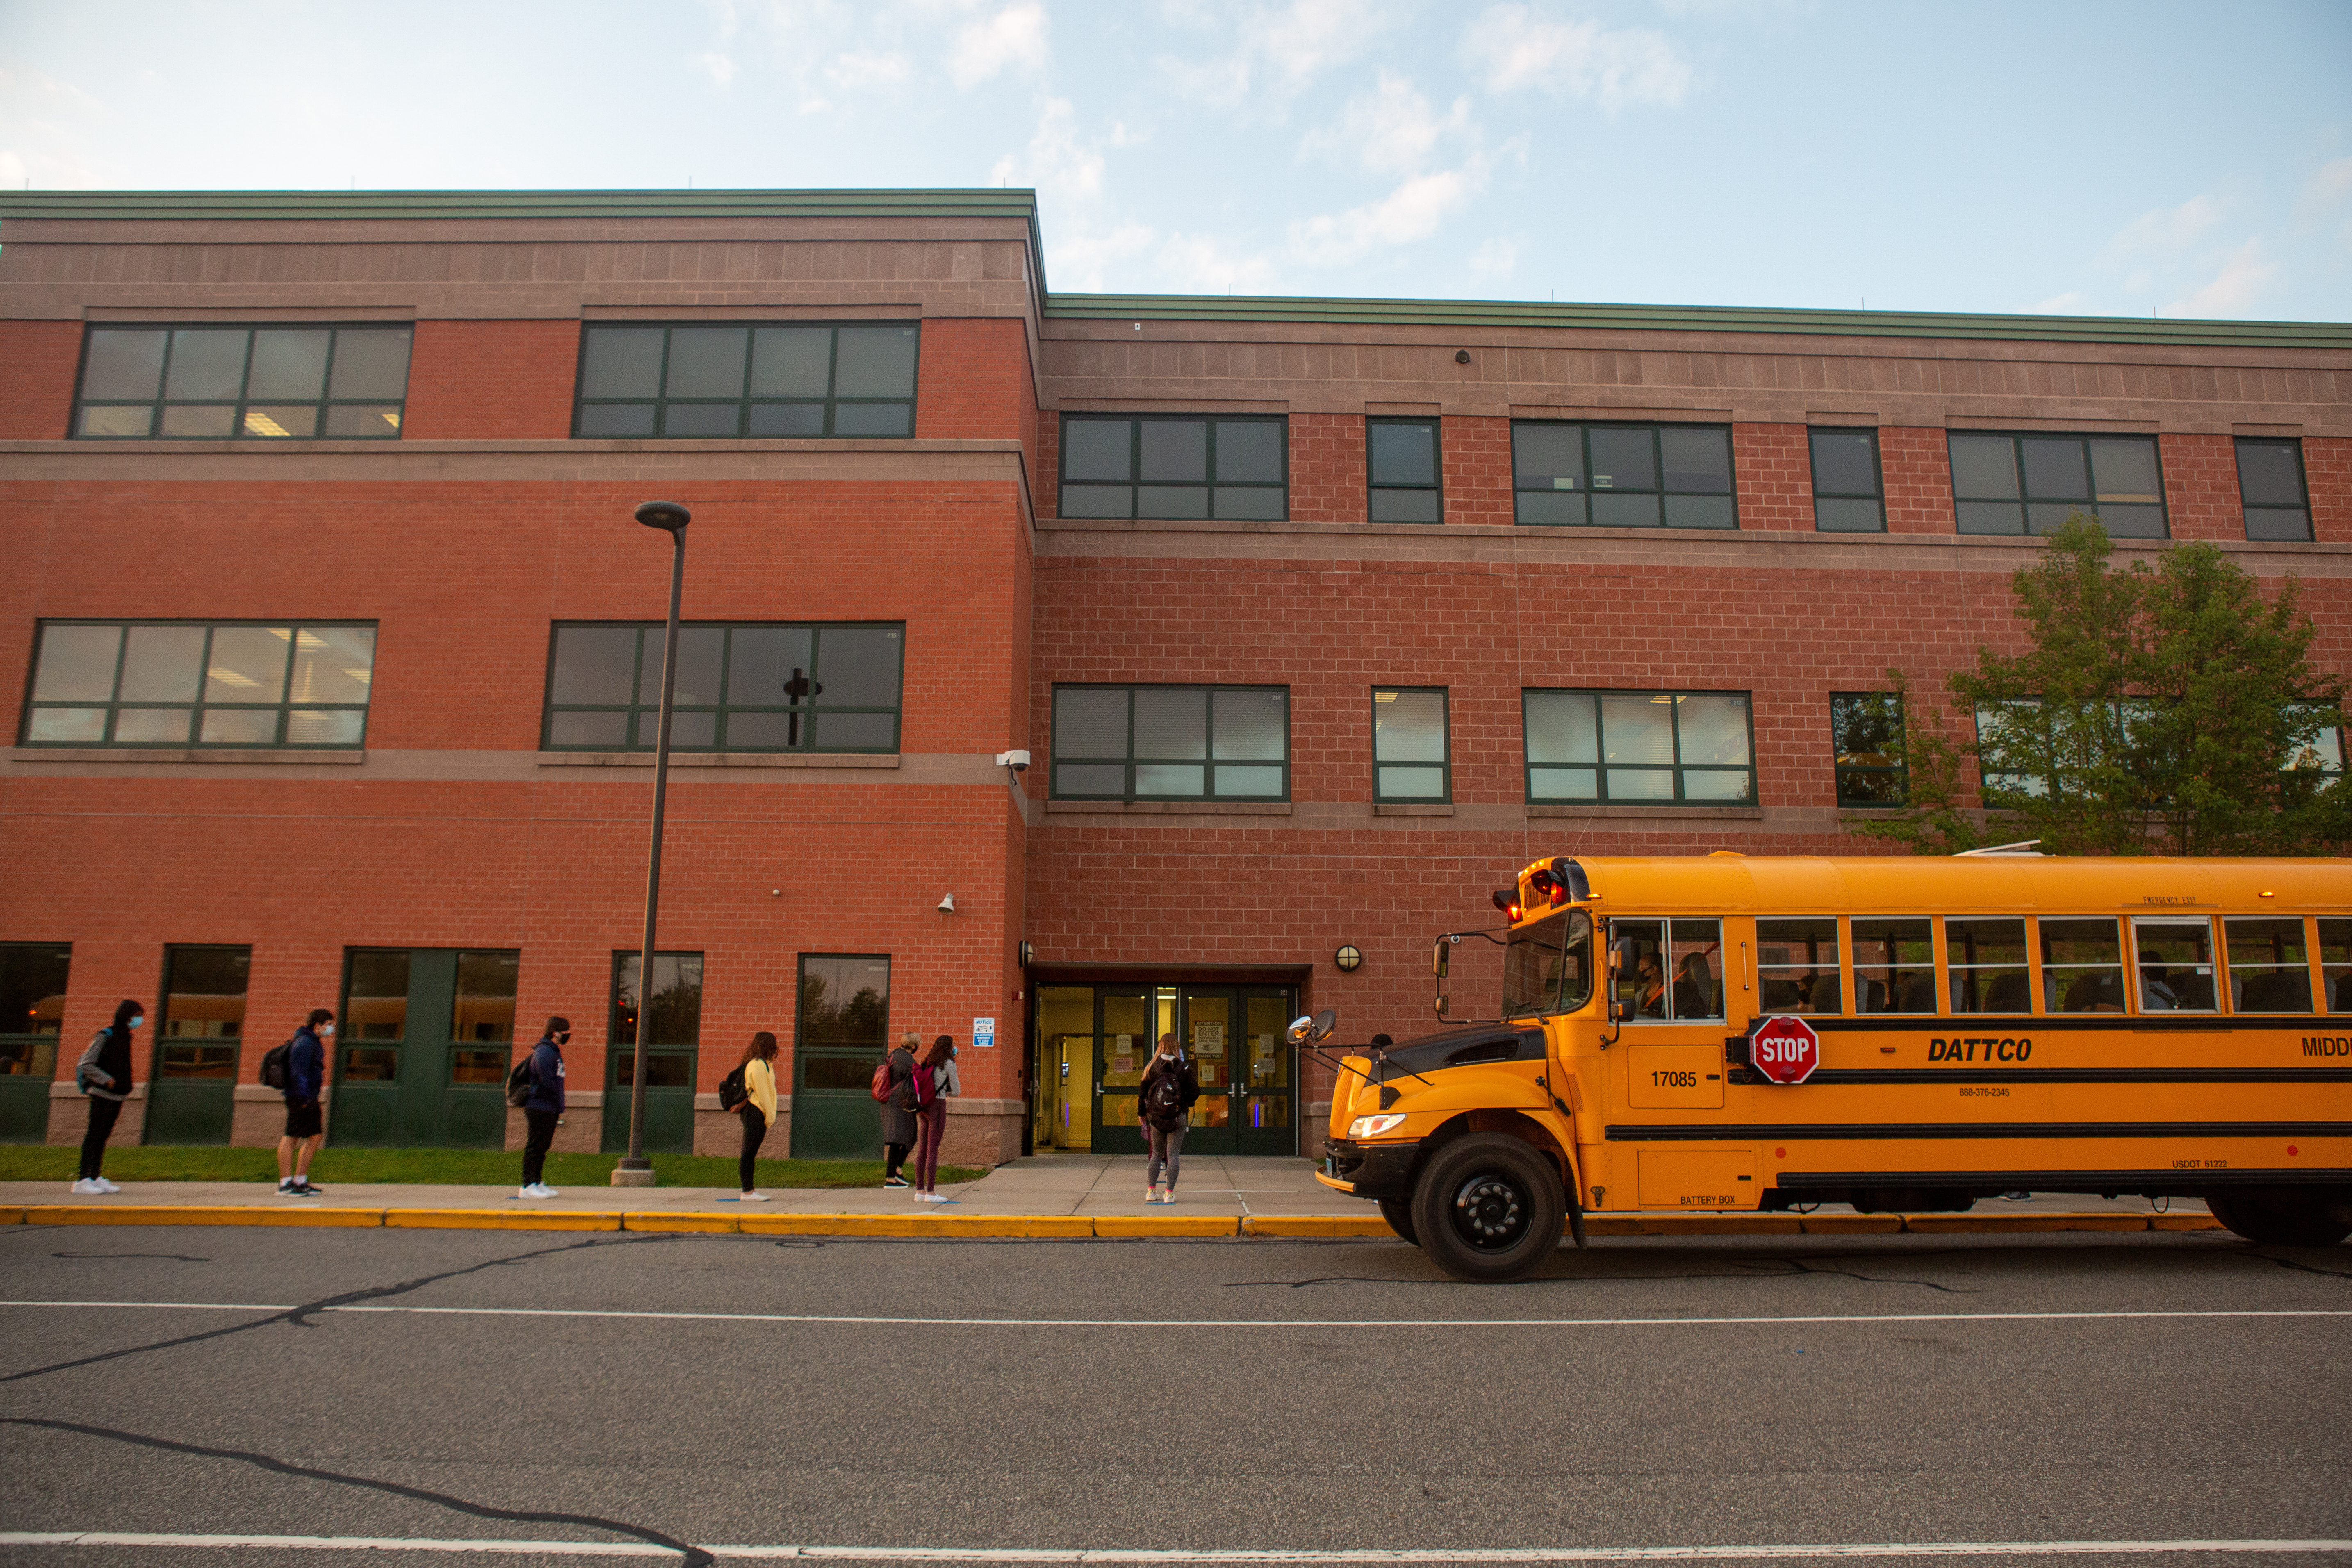 La imagen muestra la fachada de un instituto y un autobús amarillo delante y estudiantes entrando al edificio.